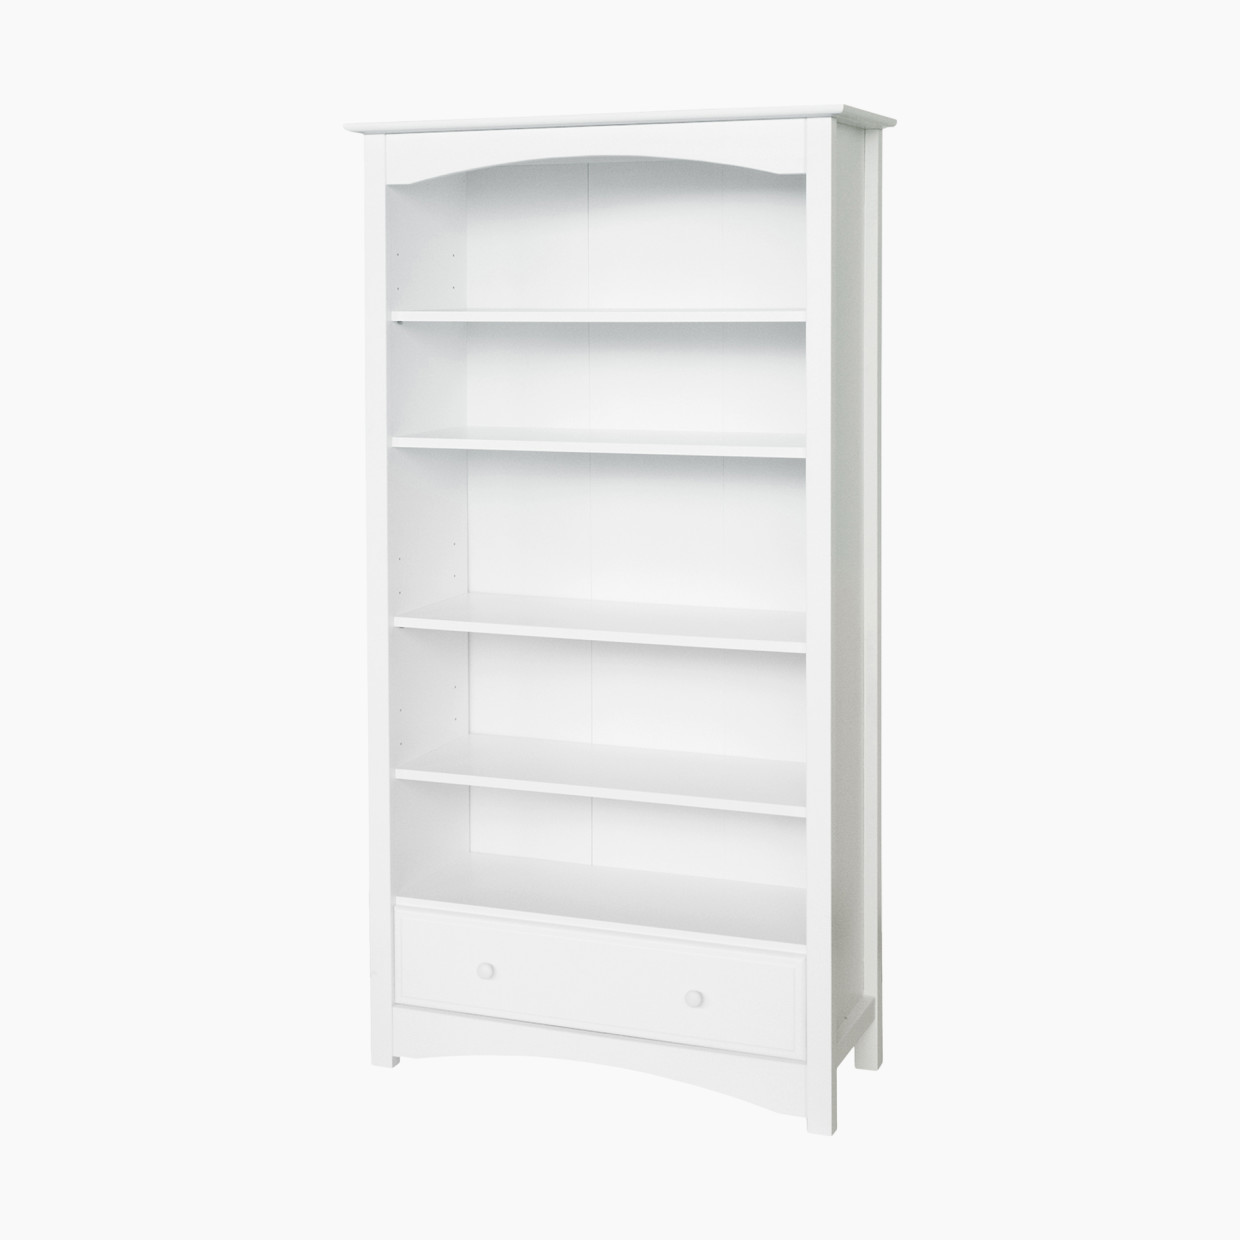 DaVinci Bookcase - White.